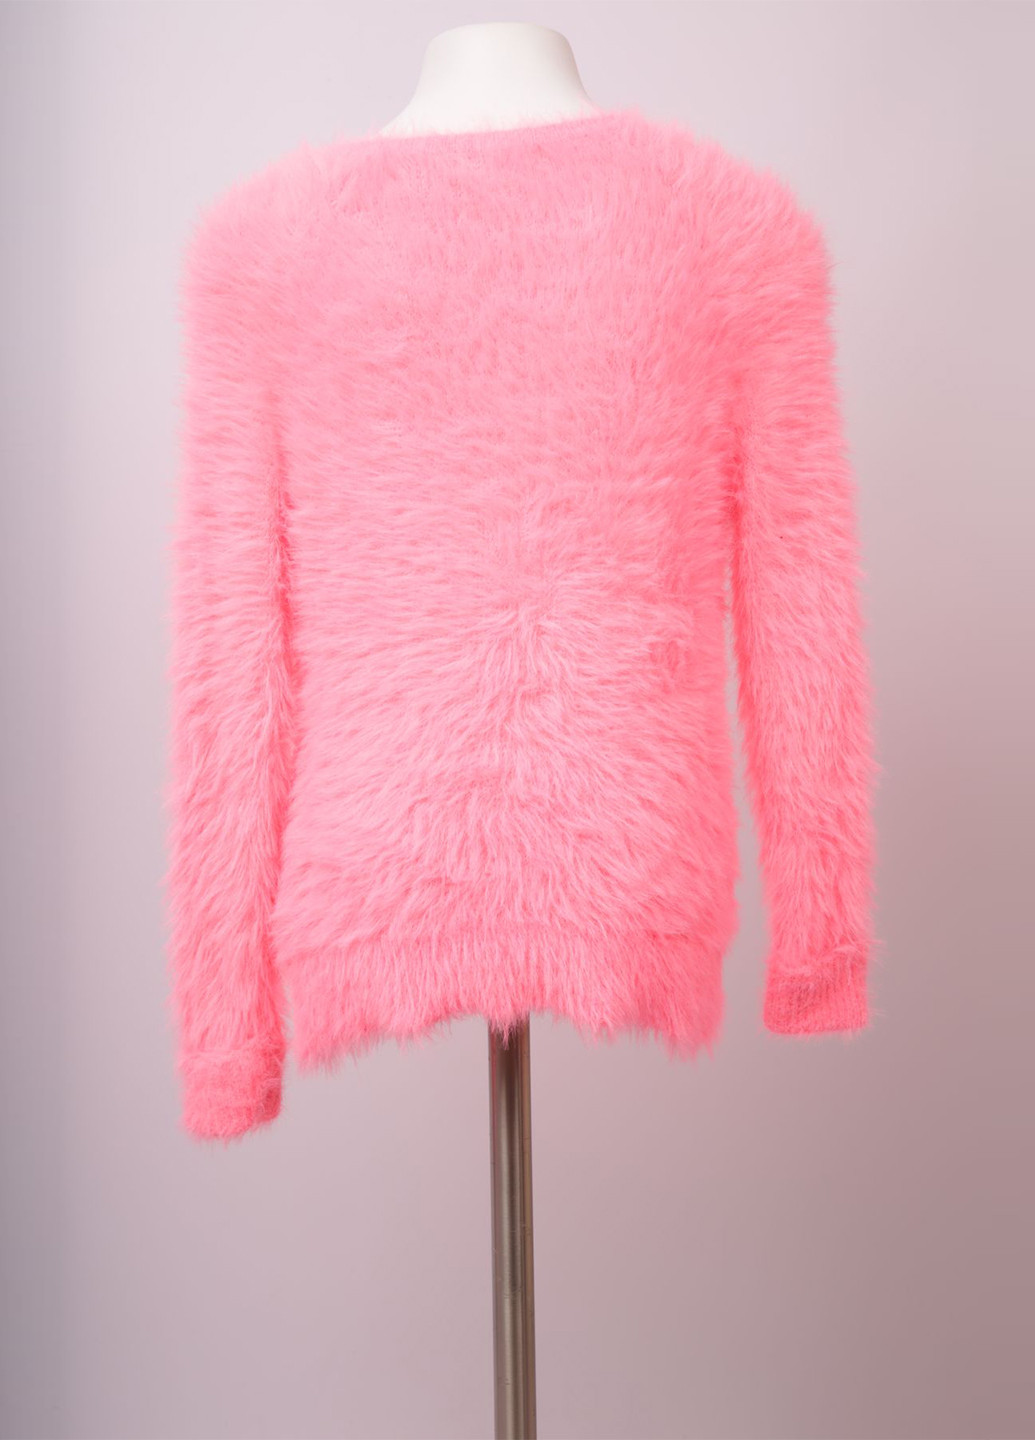 Розовый демисезонный джемпер джемпер H&M